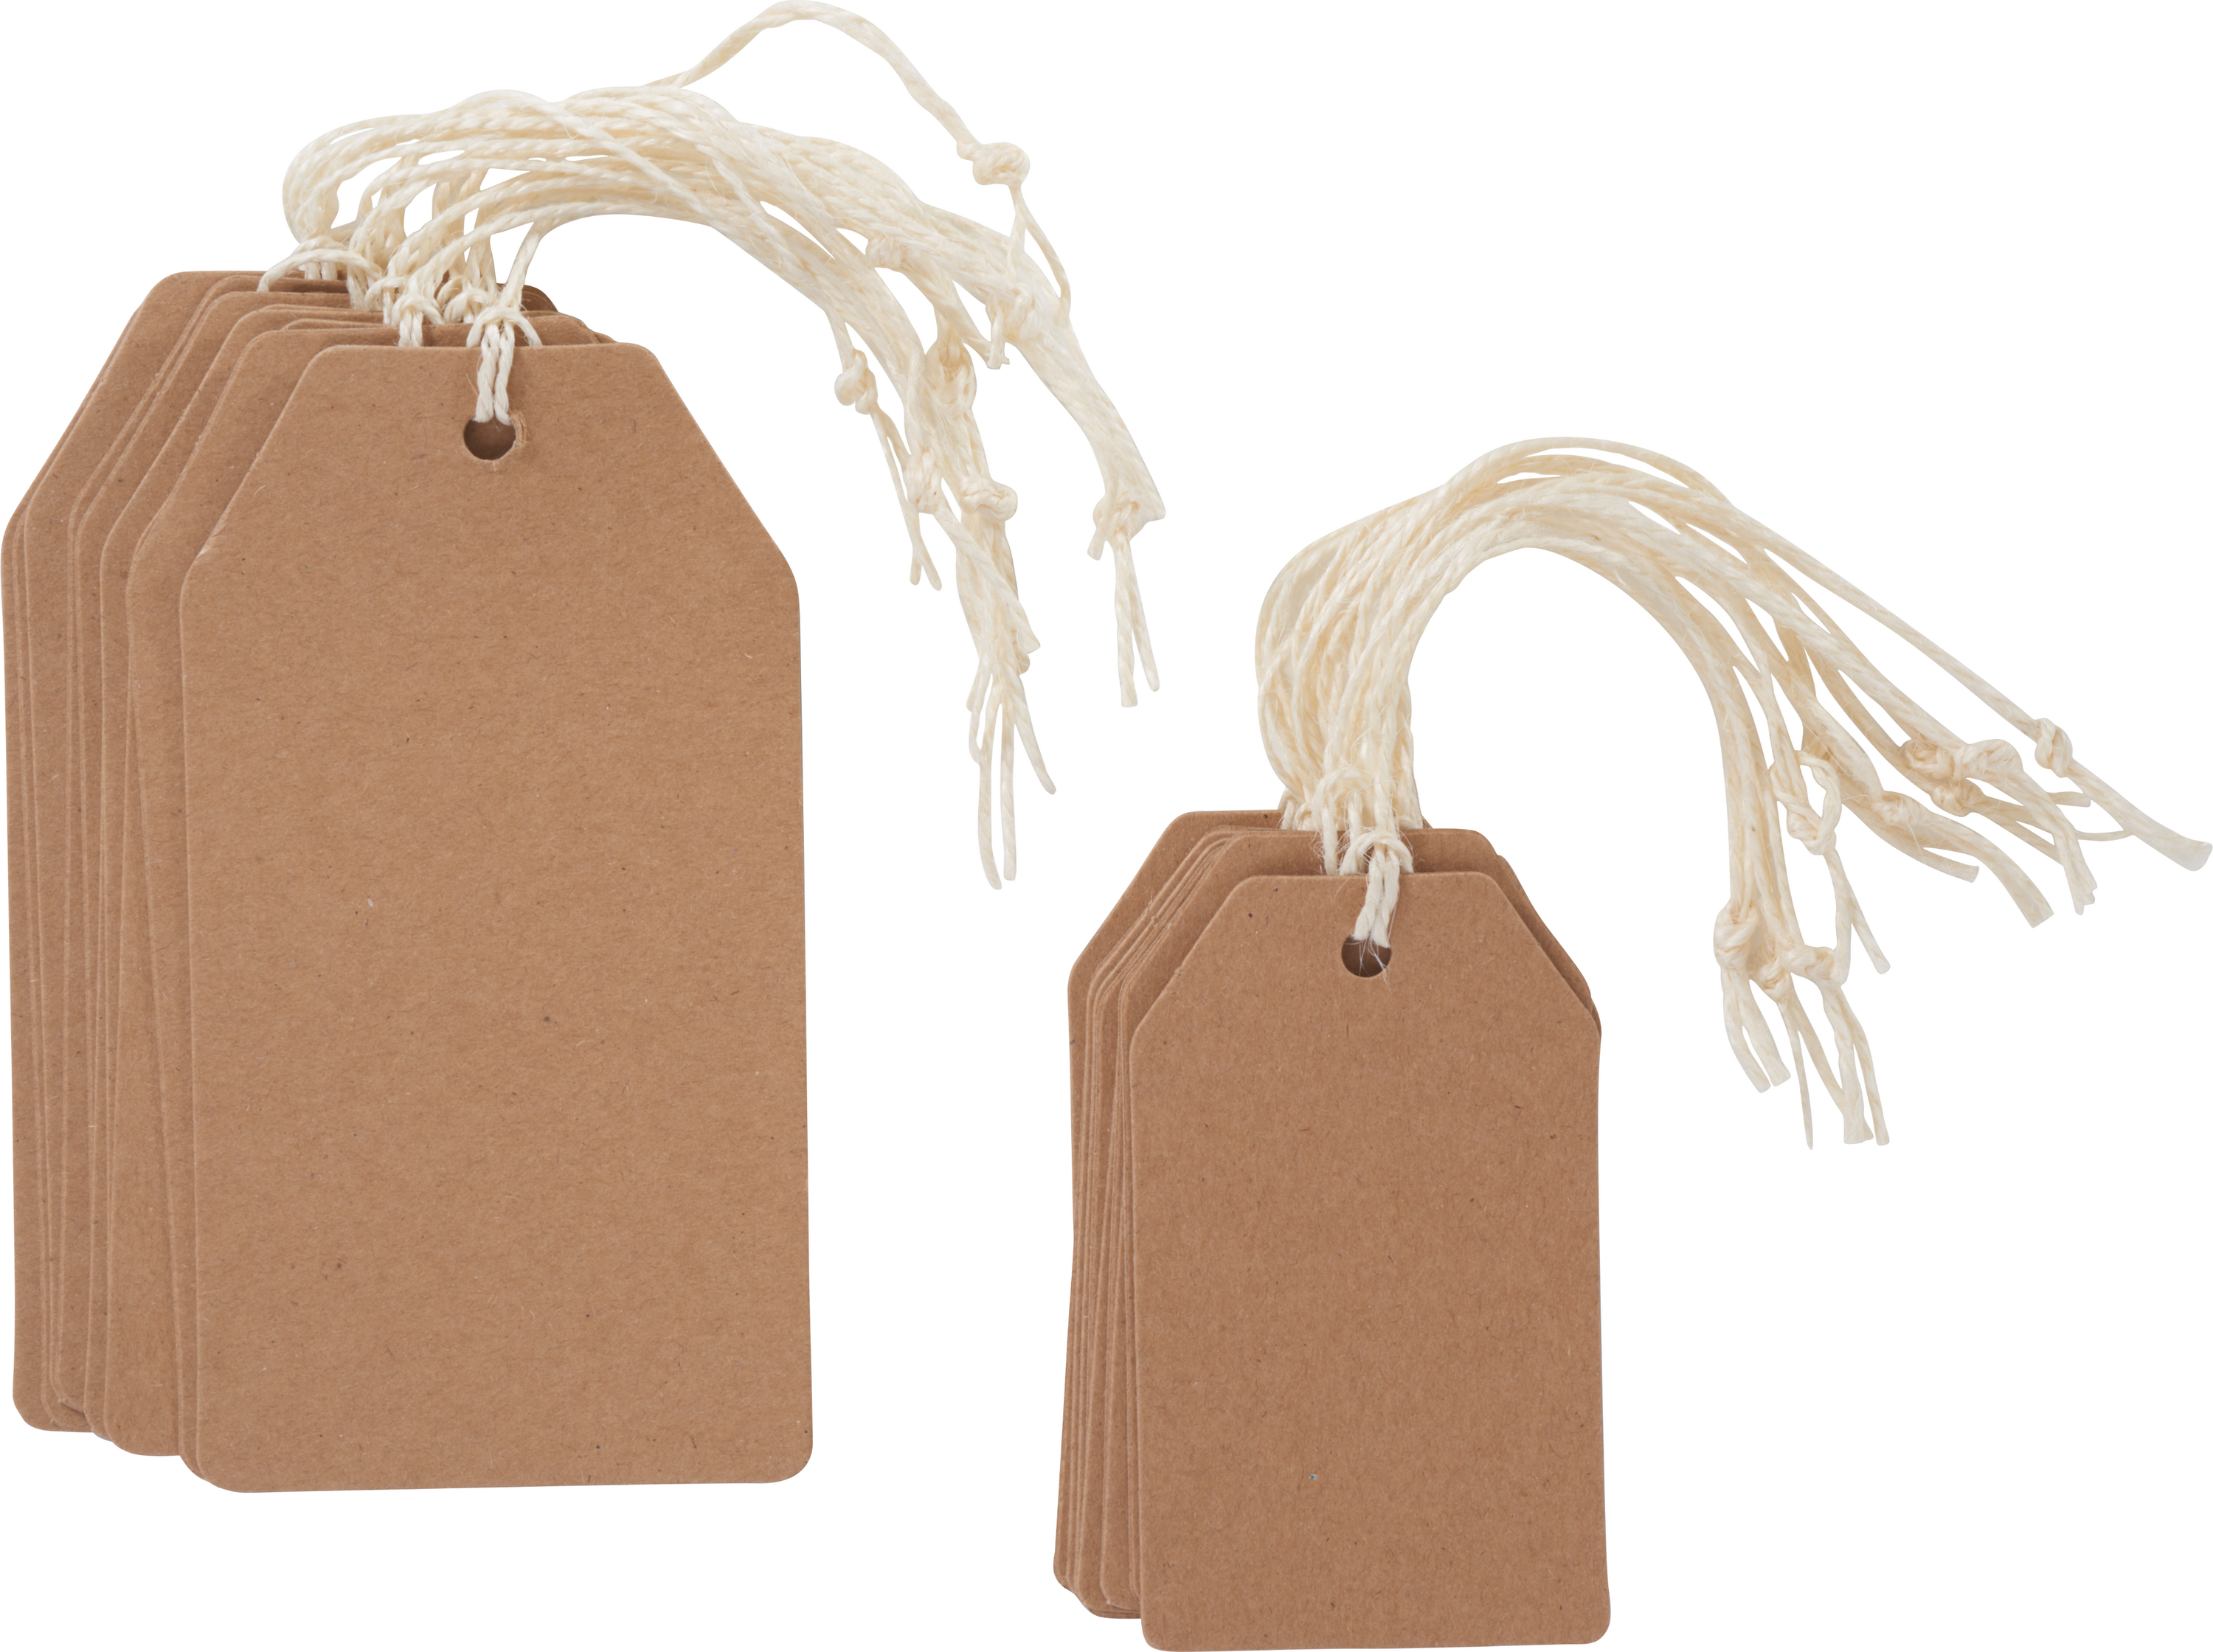 Details about   100x Kraftpapier Geschenkanhänger handgefertigt mit Love Label Luggage Xmas 